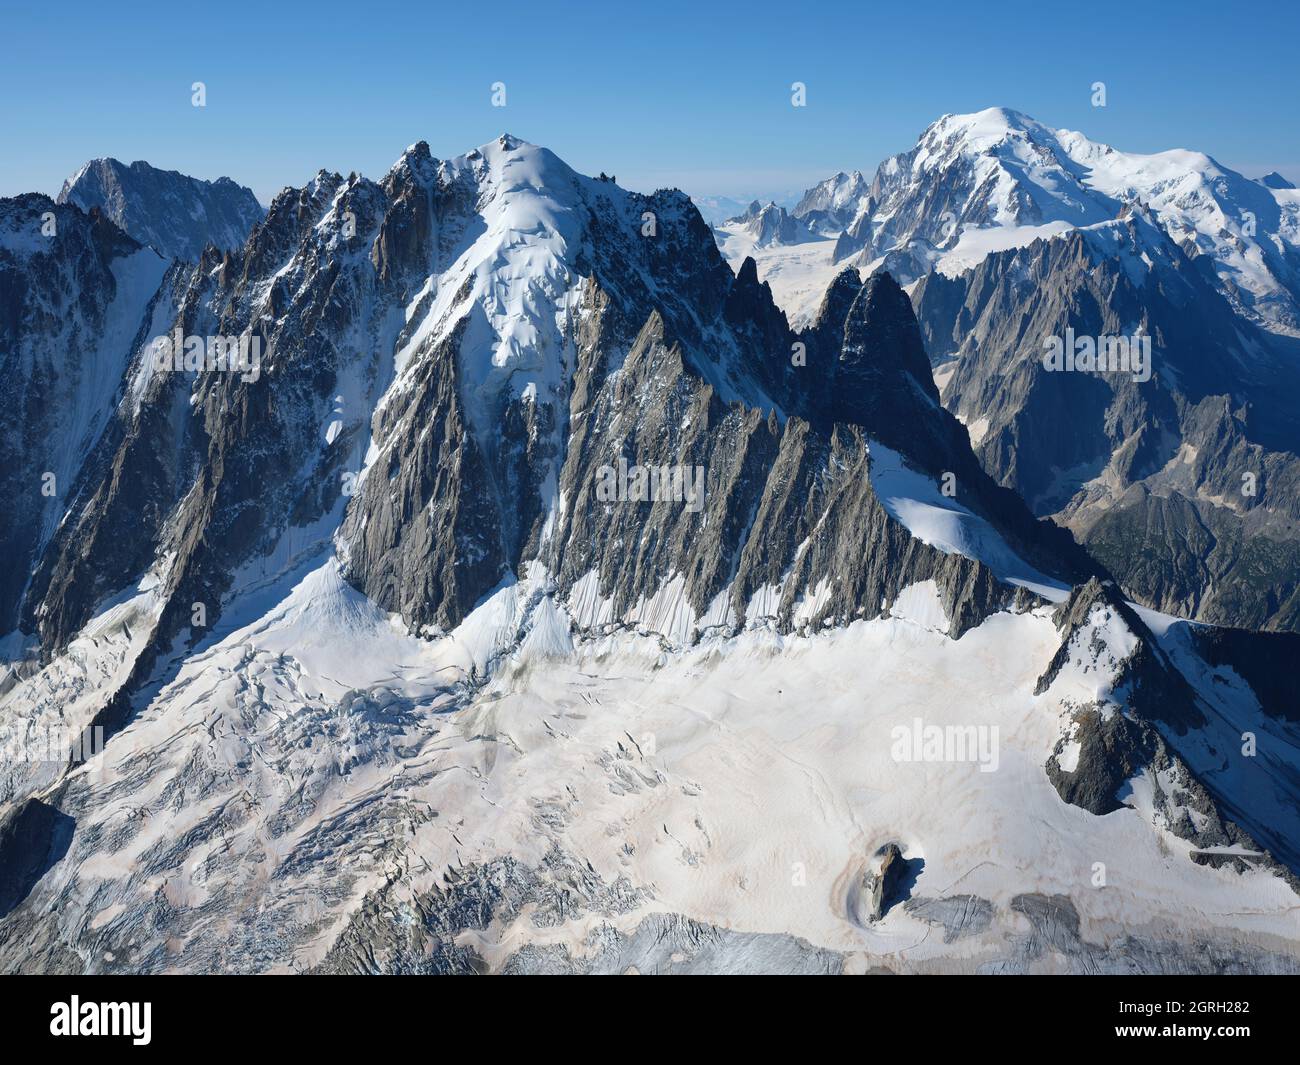 VISTA AÉREA. Cara norte de Aiguille Verte (elevación: 4122m) con Mont Blanc (4807m) en la distancia. Chamonix, Alta Saboya, Francia. Foto de stock